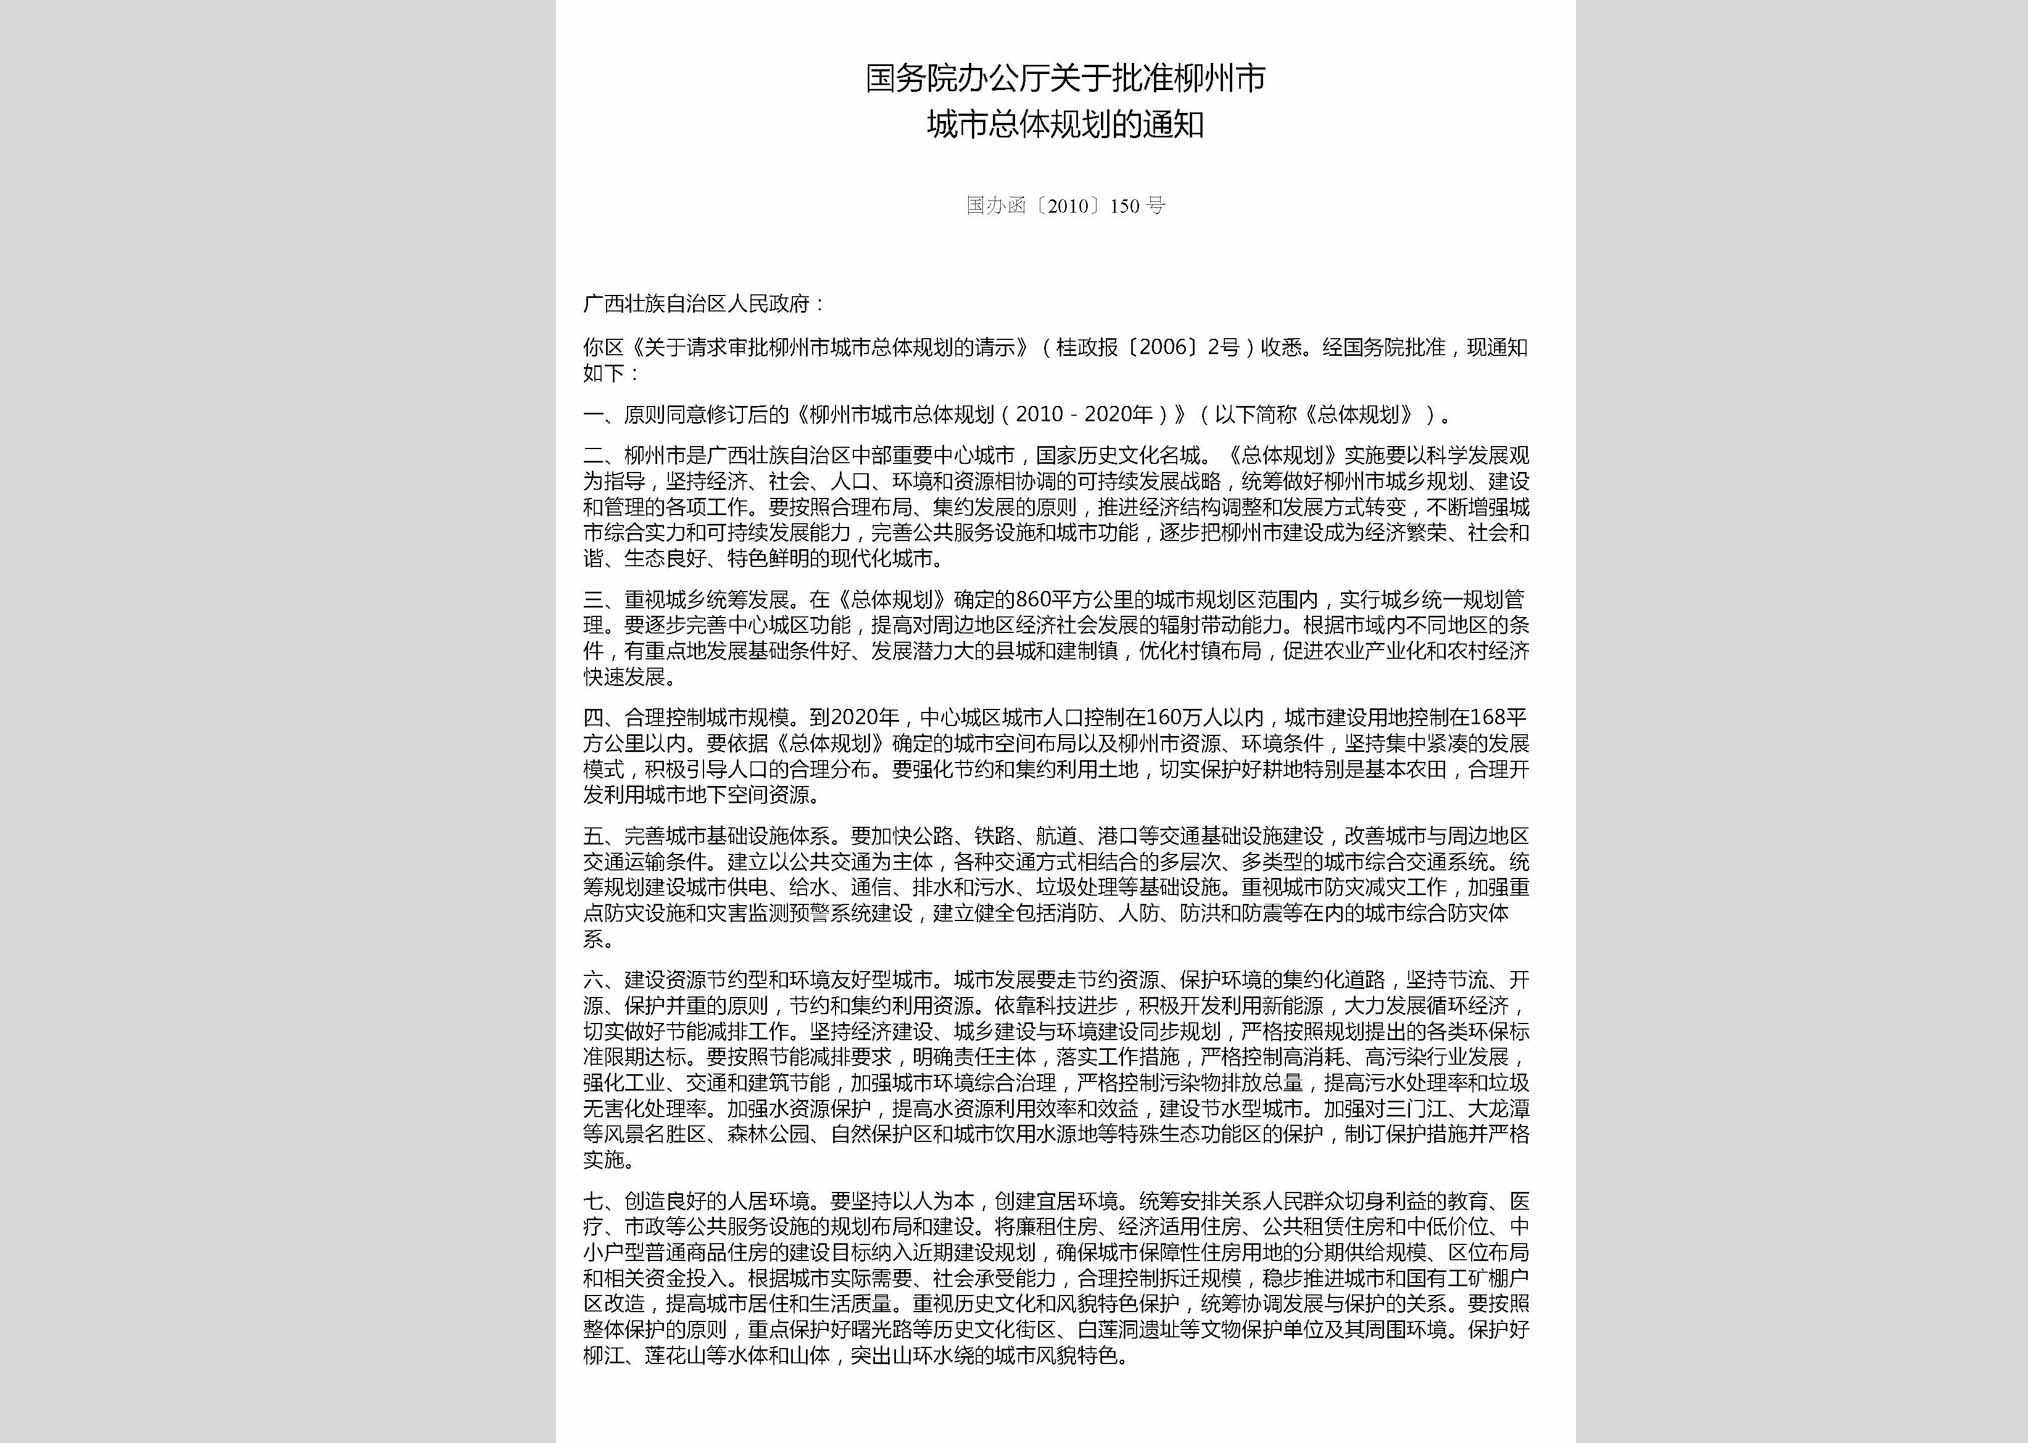 国办函[2010]150号：国务院办公厅关于批准柳州市城市总体规划的通知